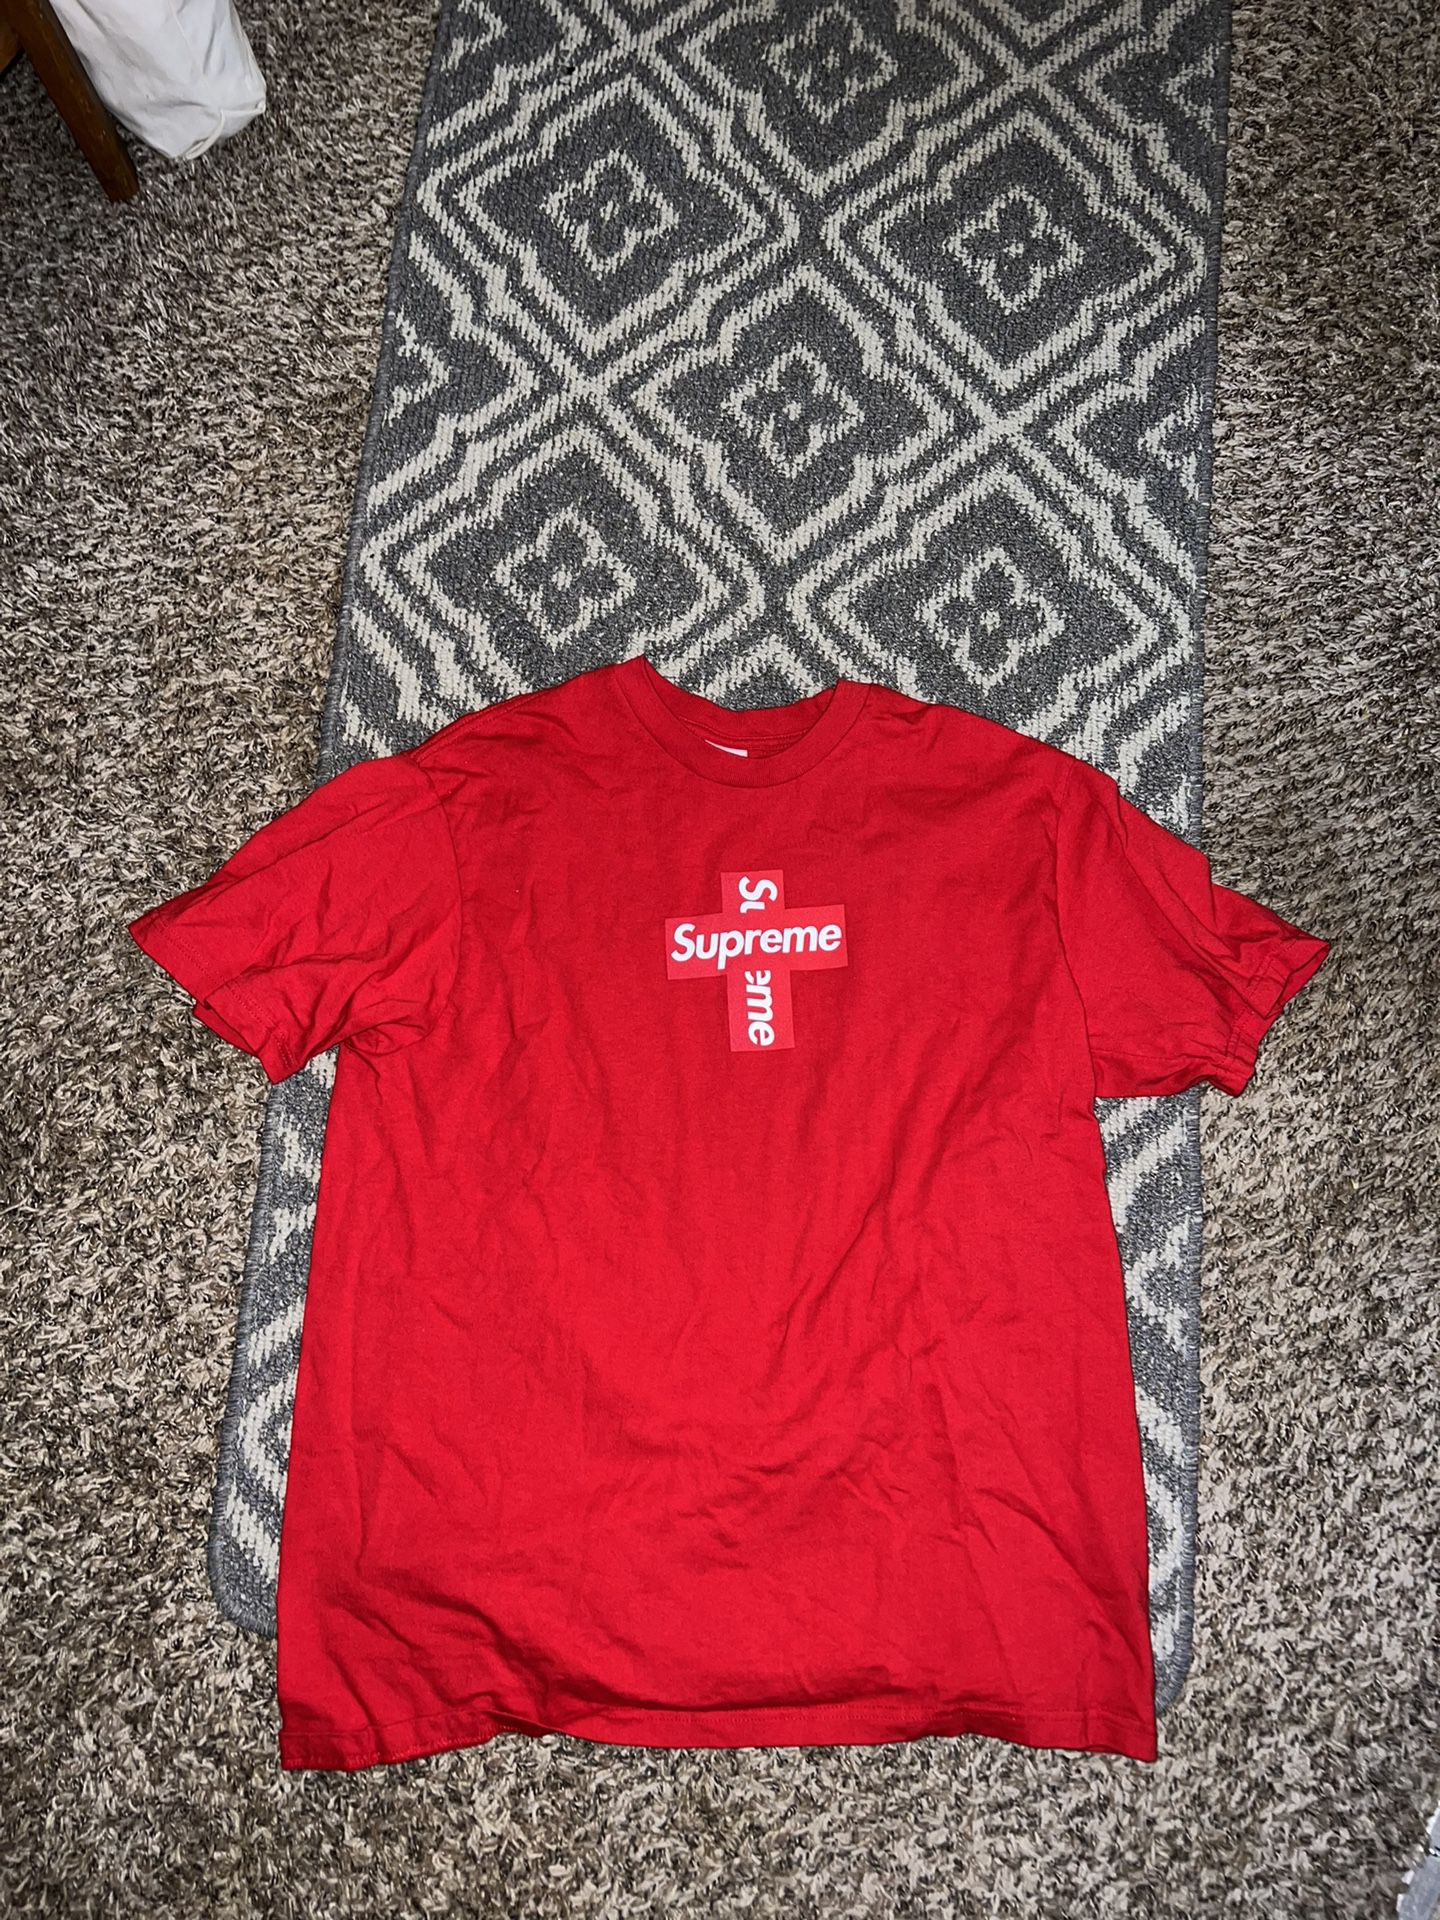 Authentic Supreme Cross Box Logo Tshirt 